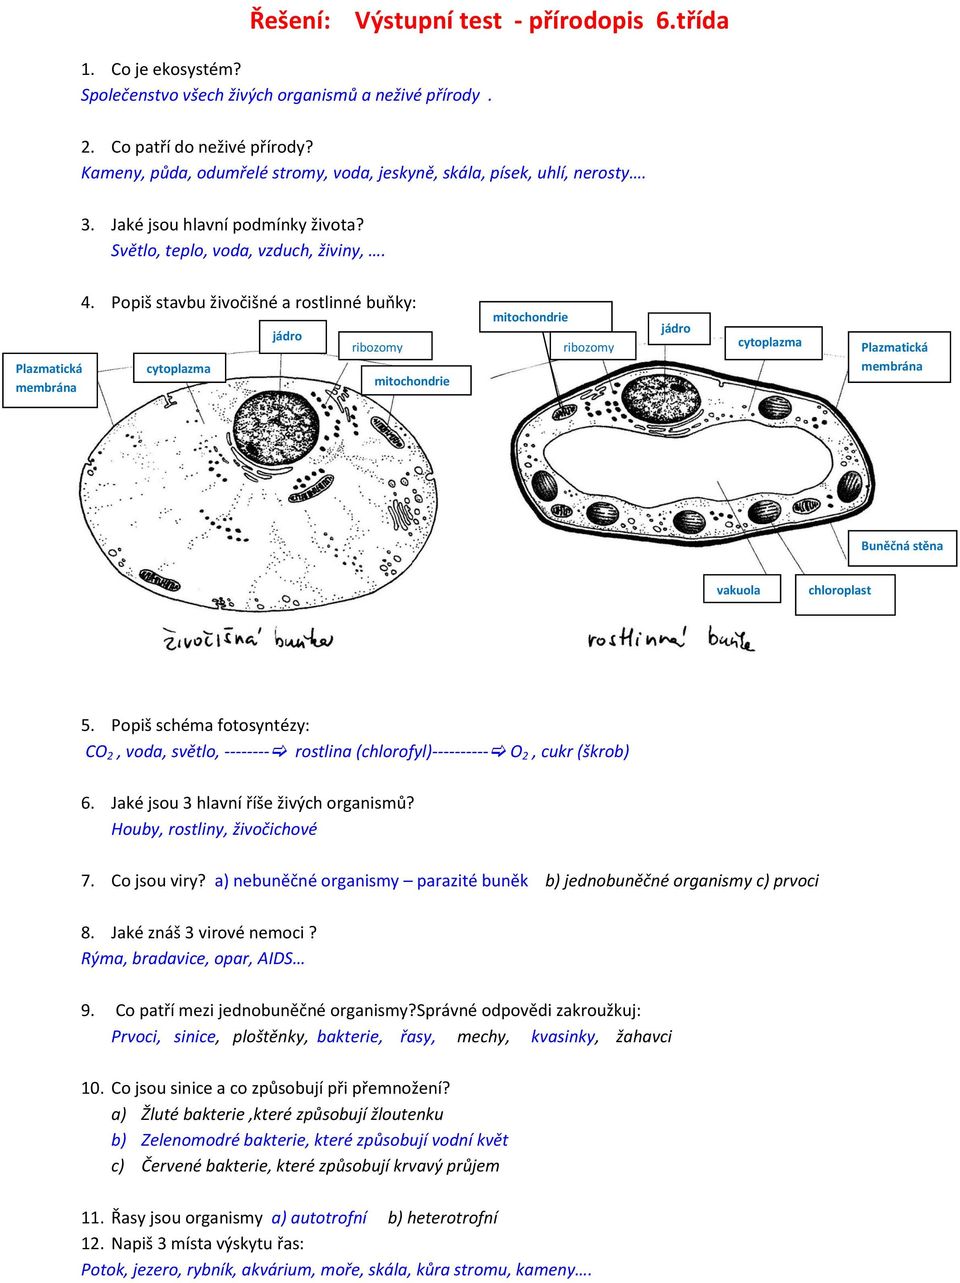 Popiš stavbu živočišné a rostlinné buňky: cytoplazma jádro ribozomy mitochondrie mitochondrie ribozomy jádro cytoplazma Plazmatická membrána Buněčná stěna vakuola chloroplast 5.